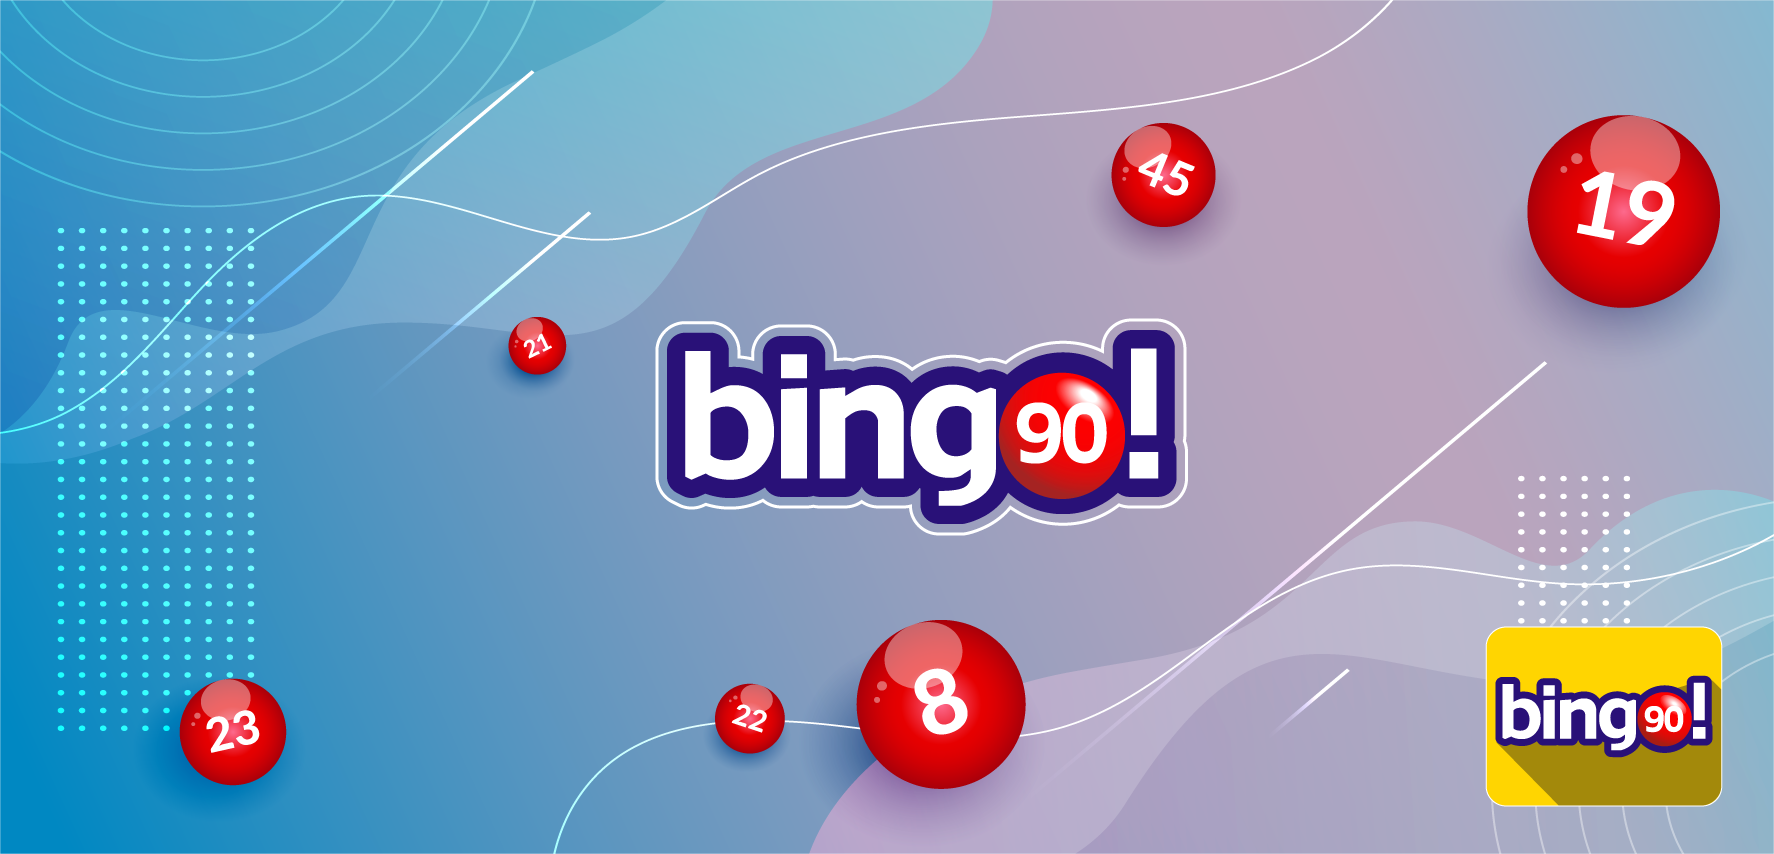 Bingo-90 - La versione classica del gioco disponibile su